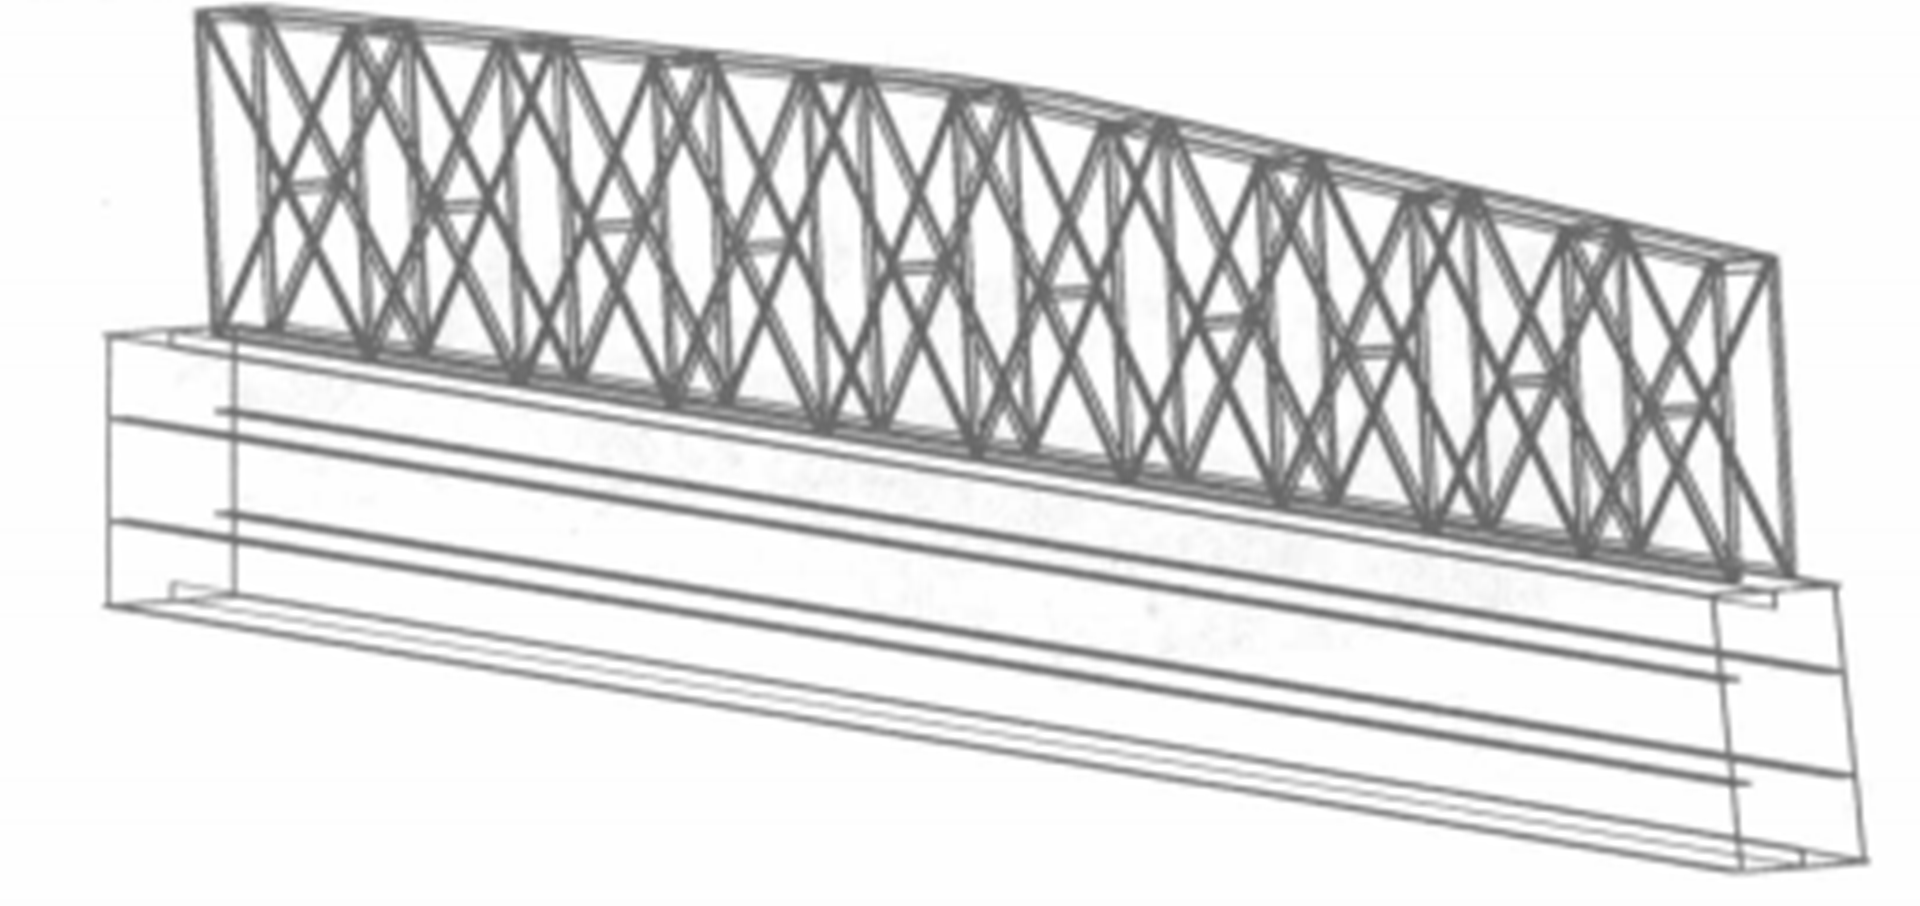 混凝土斜拉橋牽索式掛籃施工工法